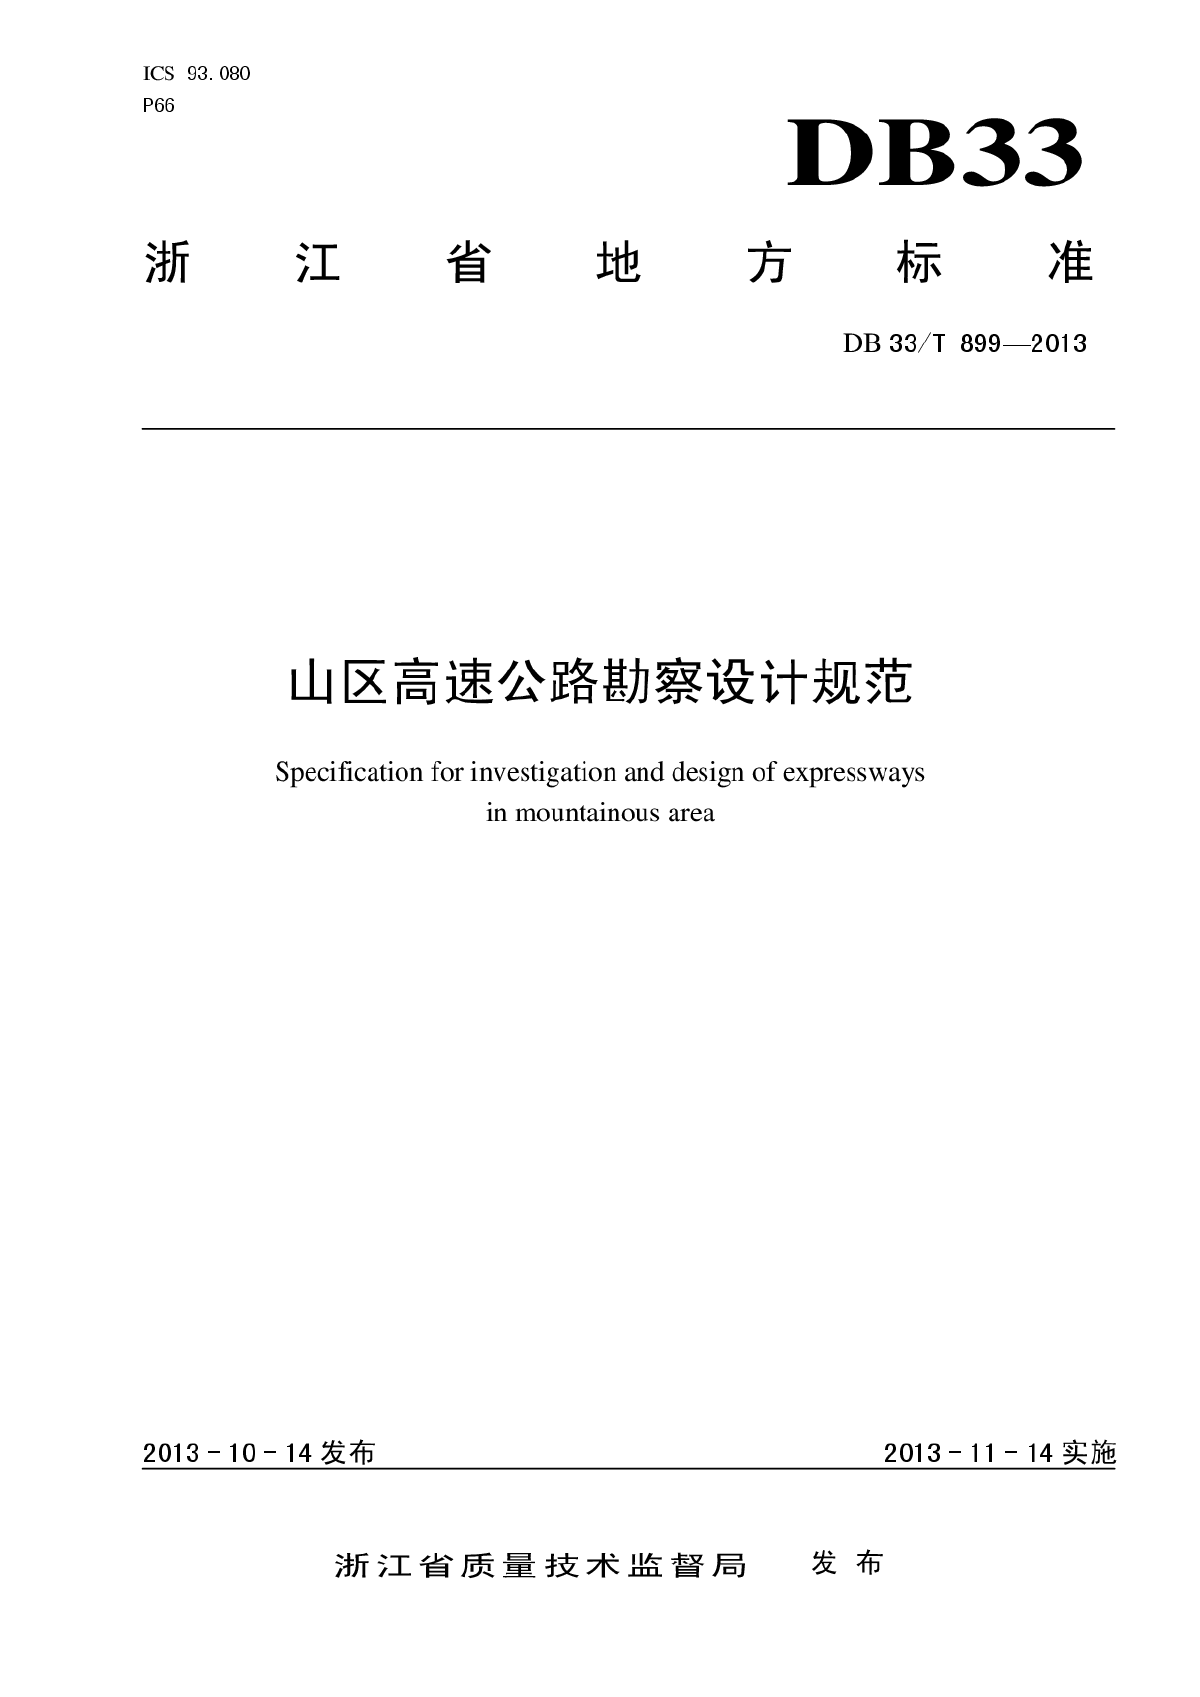 浙江省山区高速公路勘察设计规范